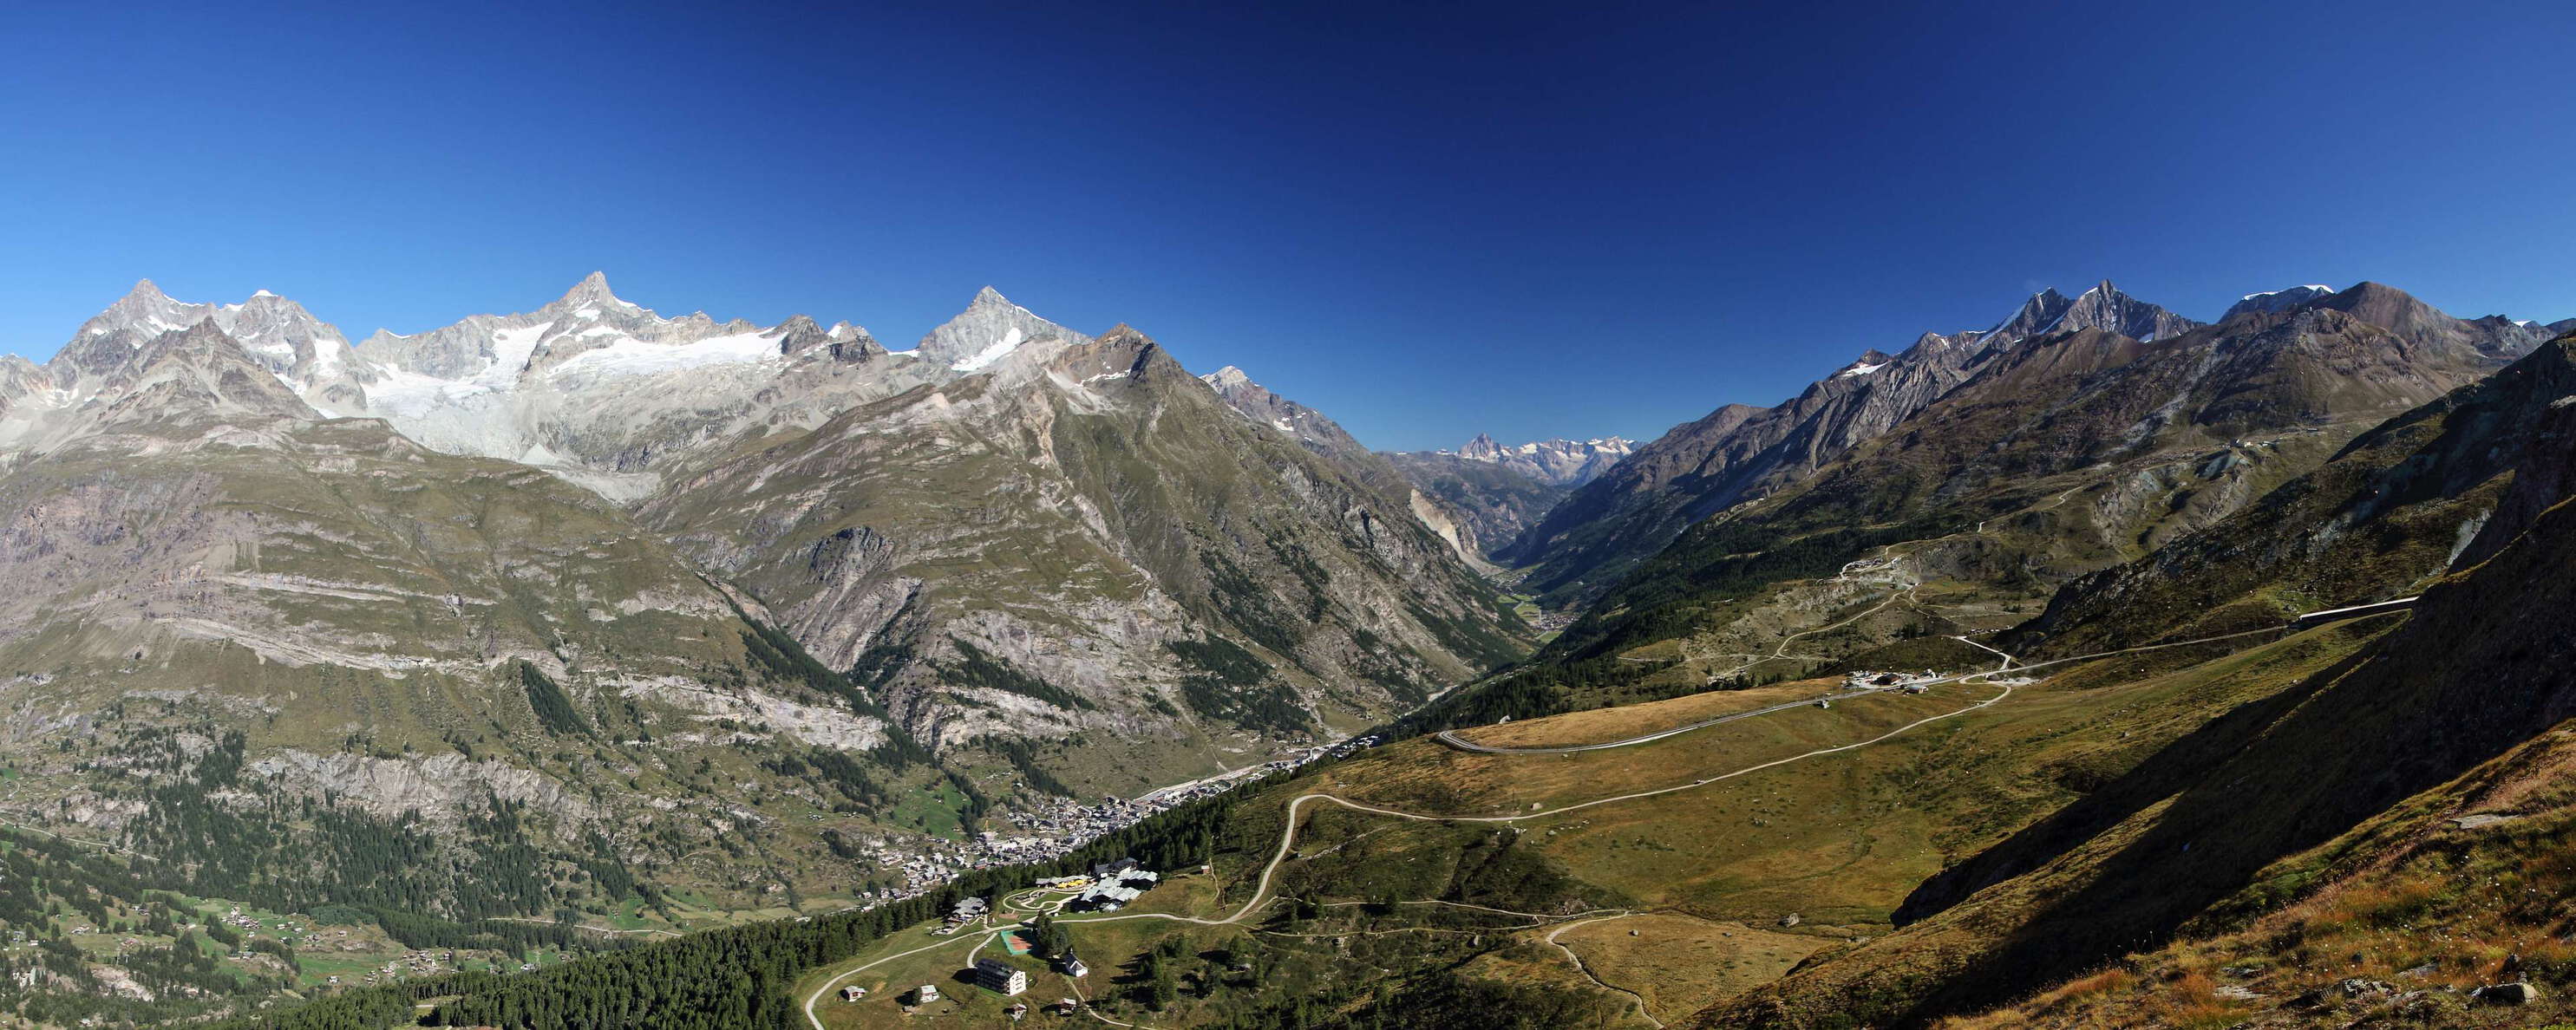 Zermatt | Matter Valley with mountain panorama